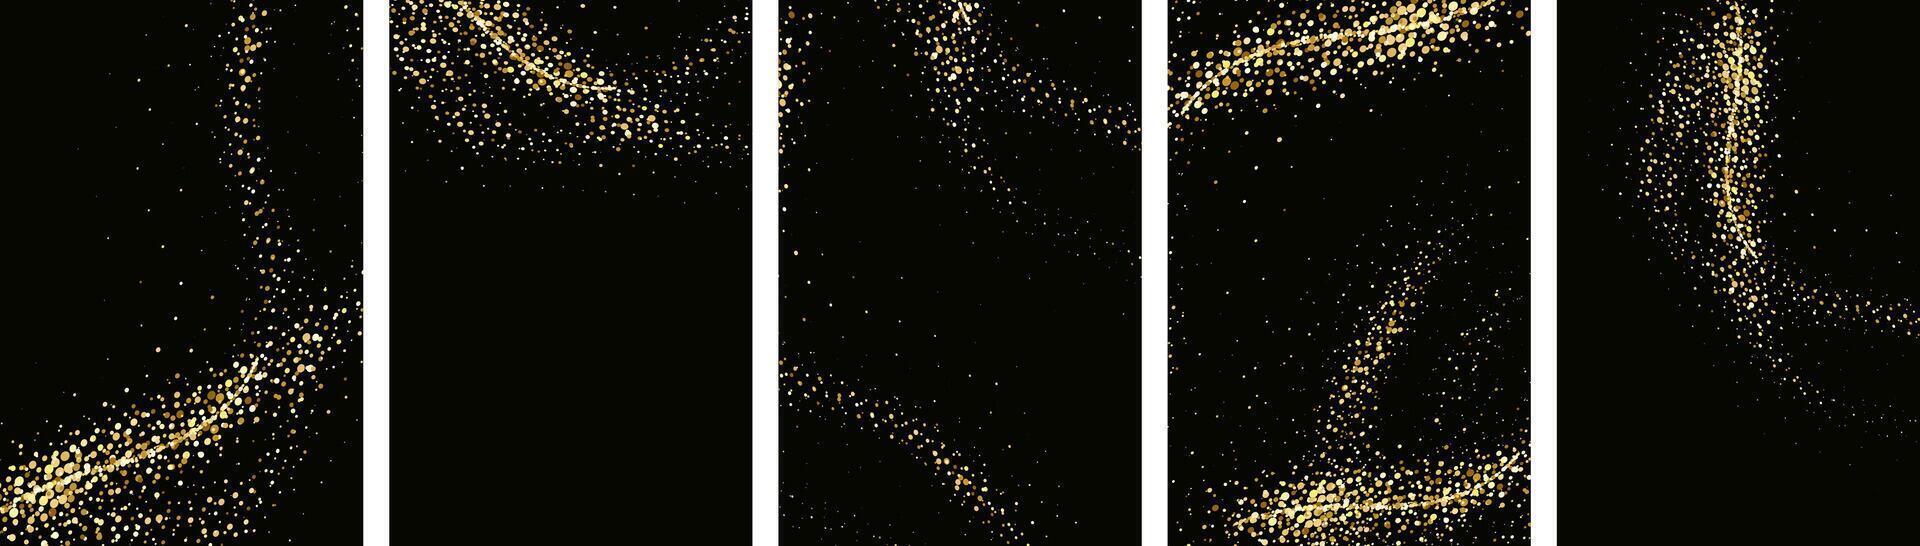 samling av glittrande stjärnor med gyllene skimrande virvlar, skinande glitter design. magisk rörelse, gnistrande rader på en svart bakgrund. vektor